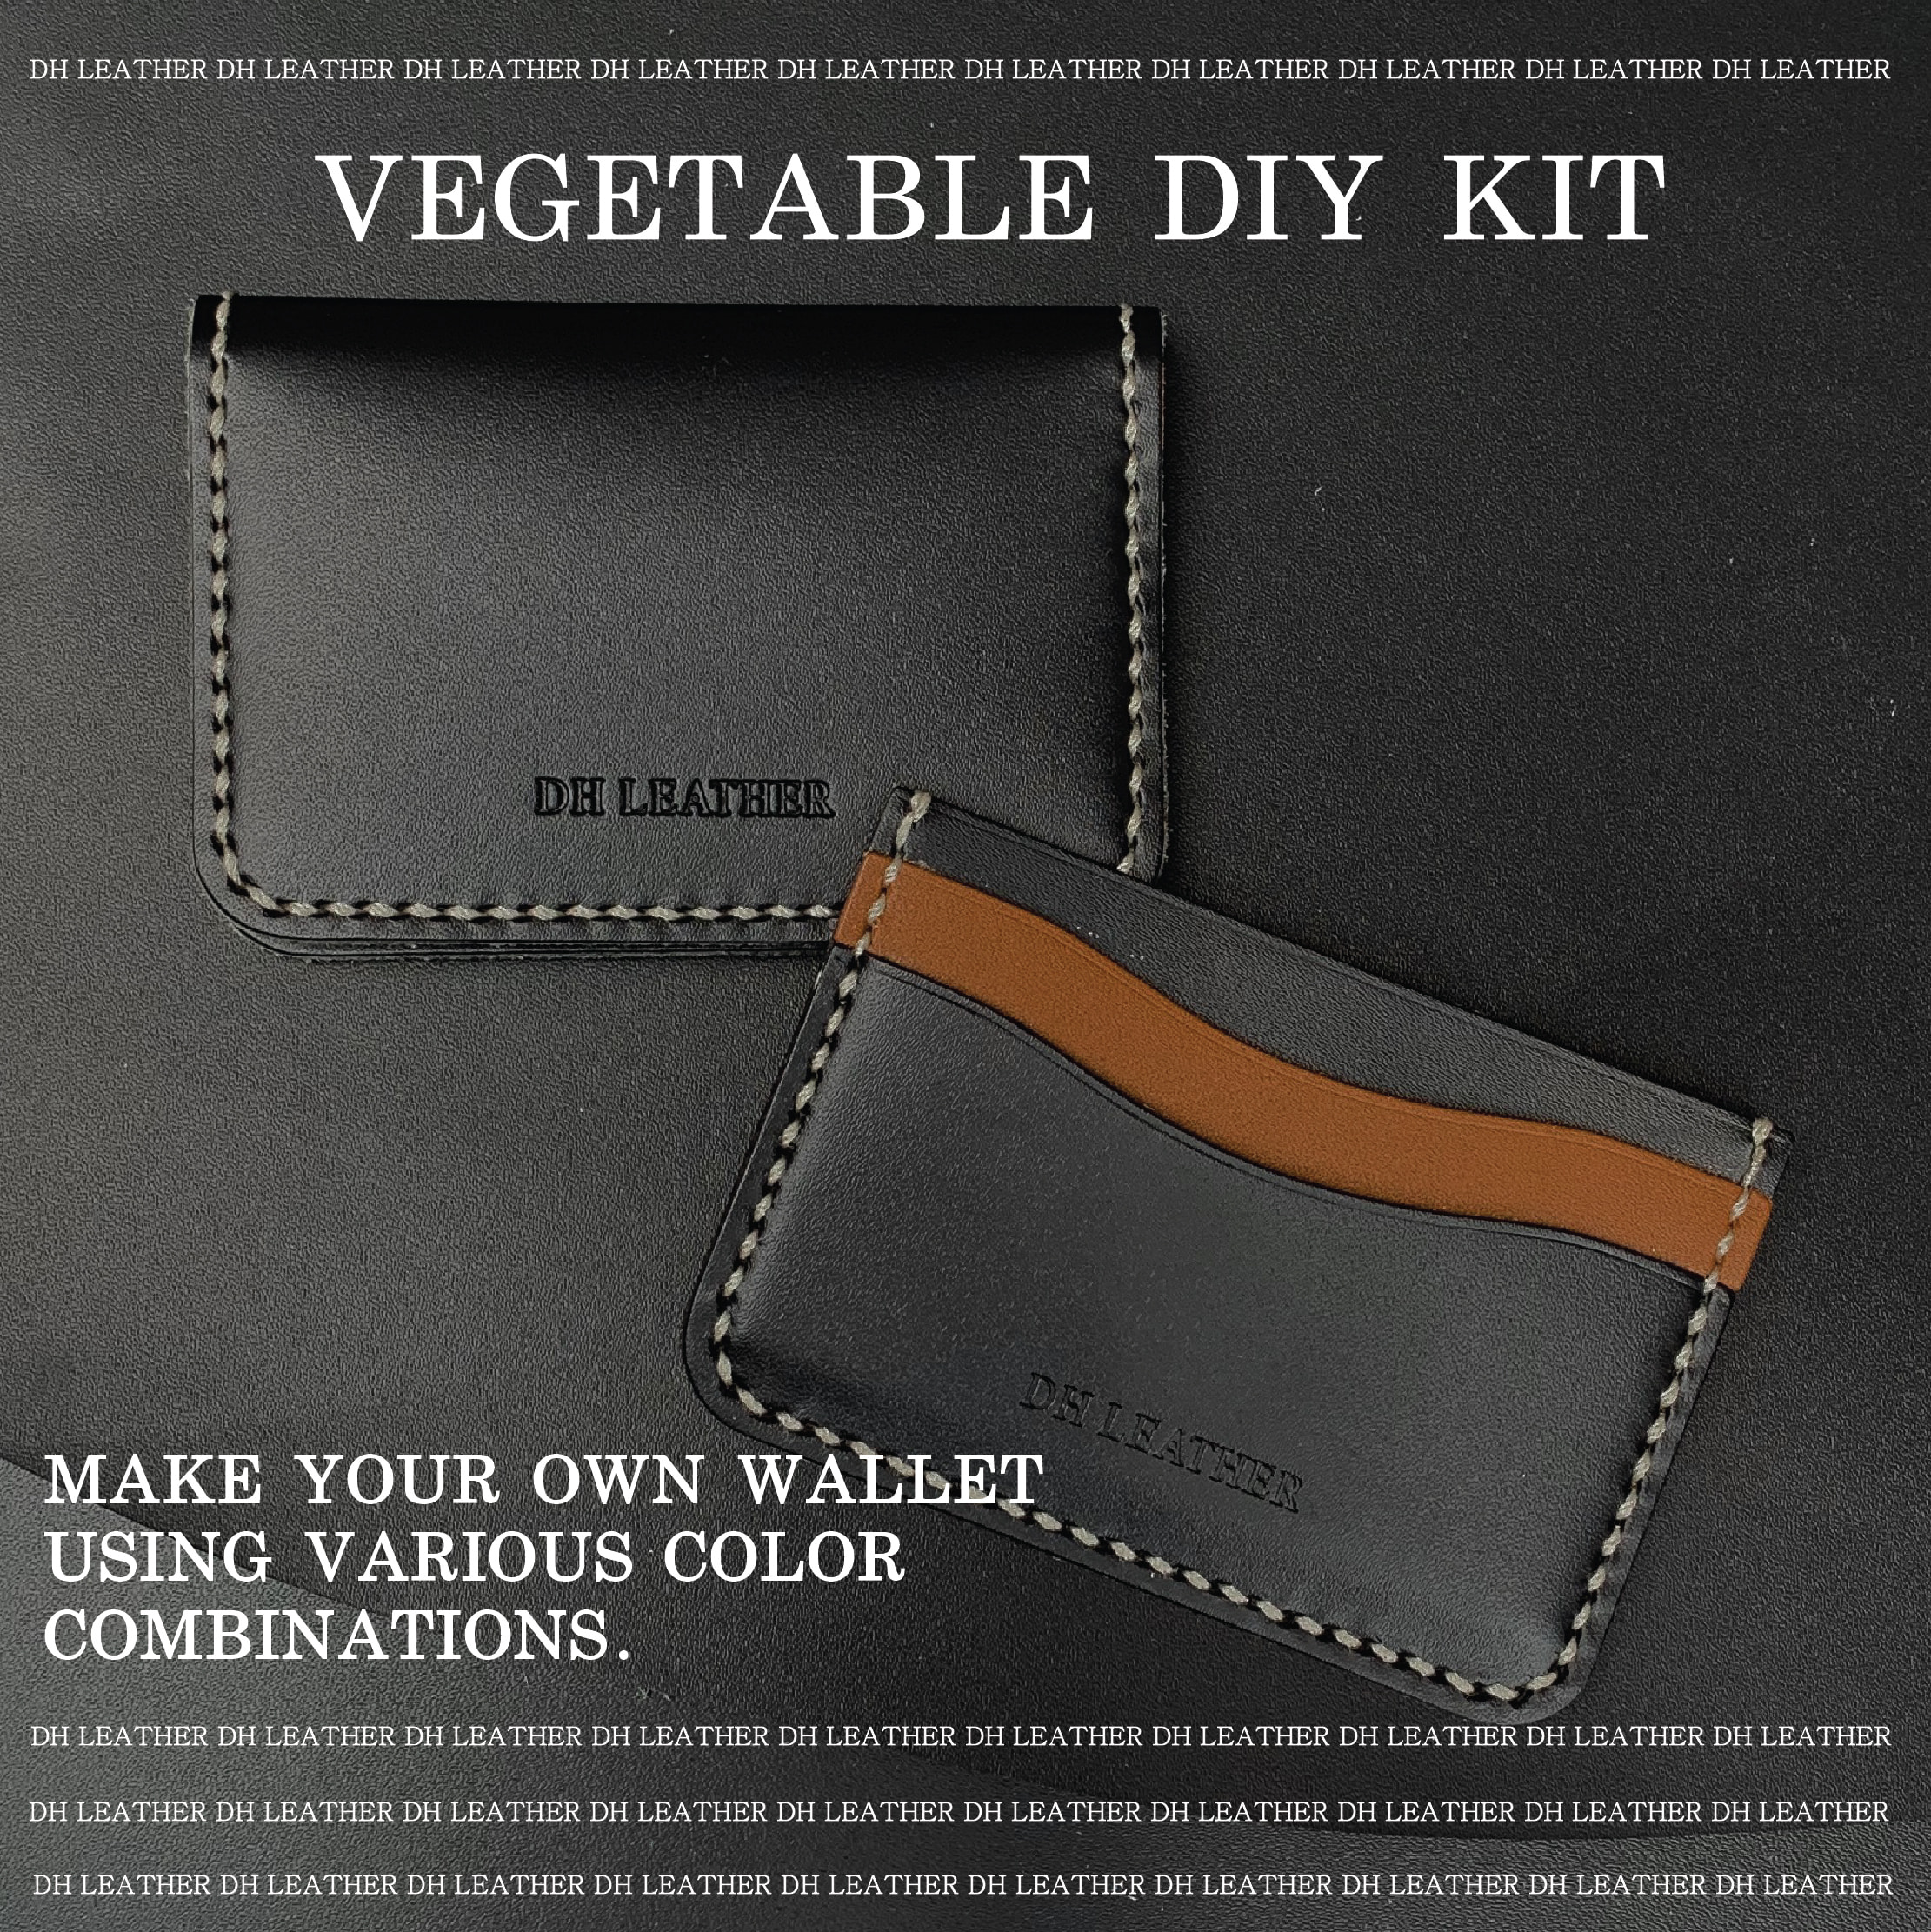 폴딩/포켓 카드지갑 DIY KIT - 베지터블 바케타 블랙 (이태리) standard